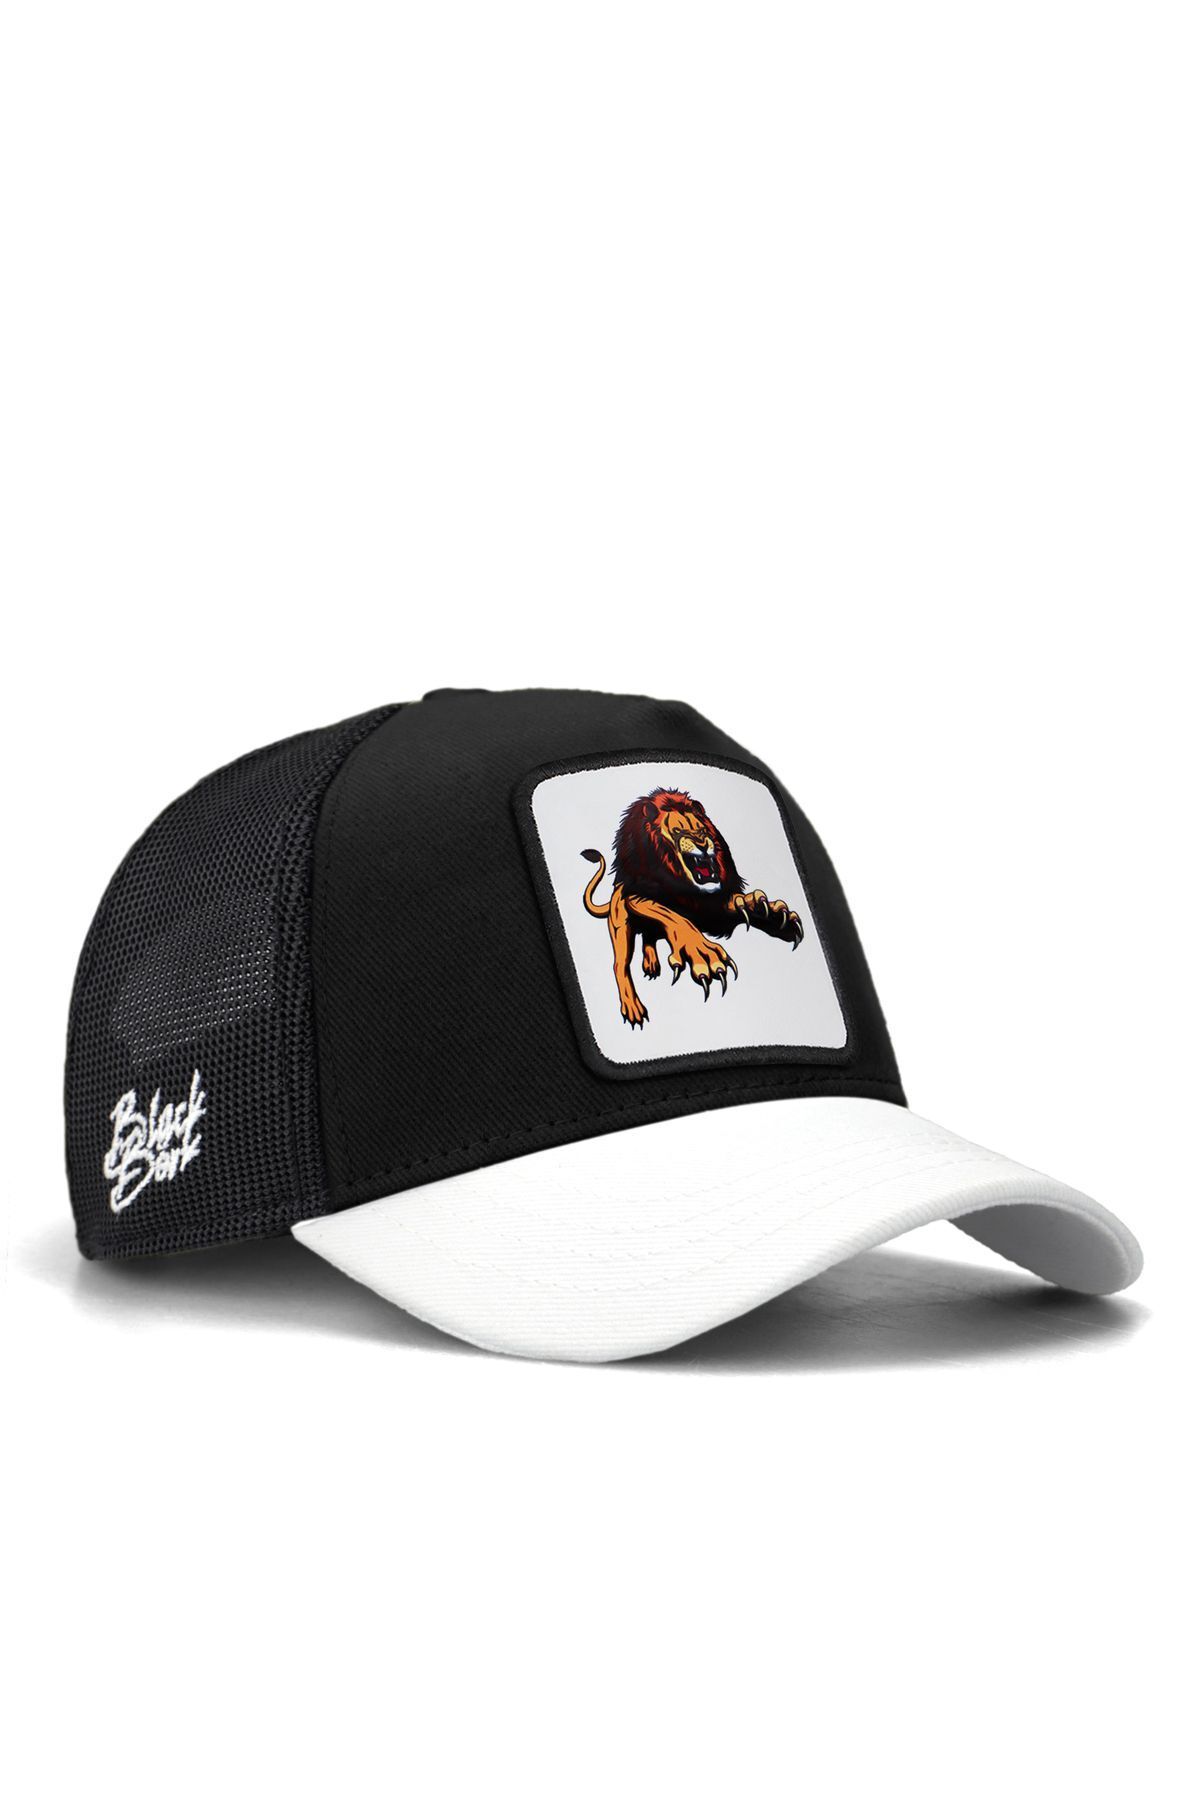 BlackBörk V1 Trucker Kids Aslan - 5bs Kod Logolu Unisex Beyaz Siperli Siyah Çocuk Şapka (CAP)